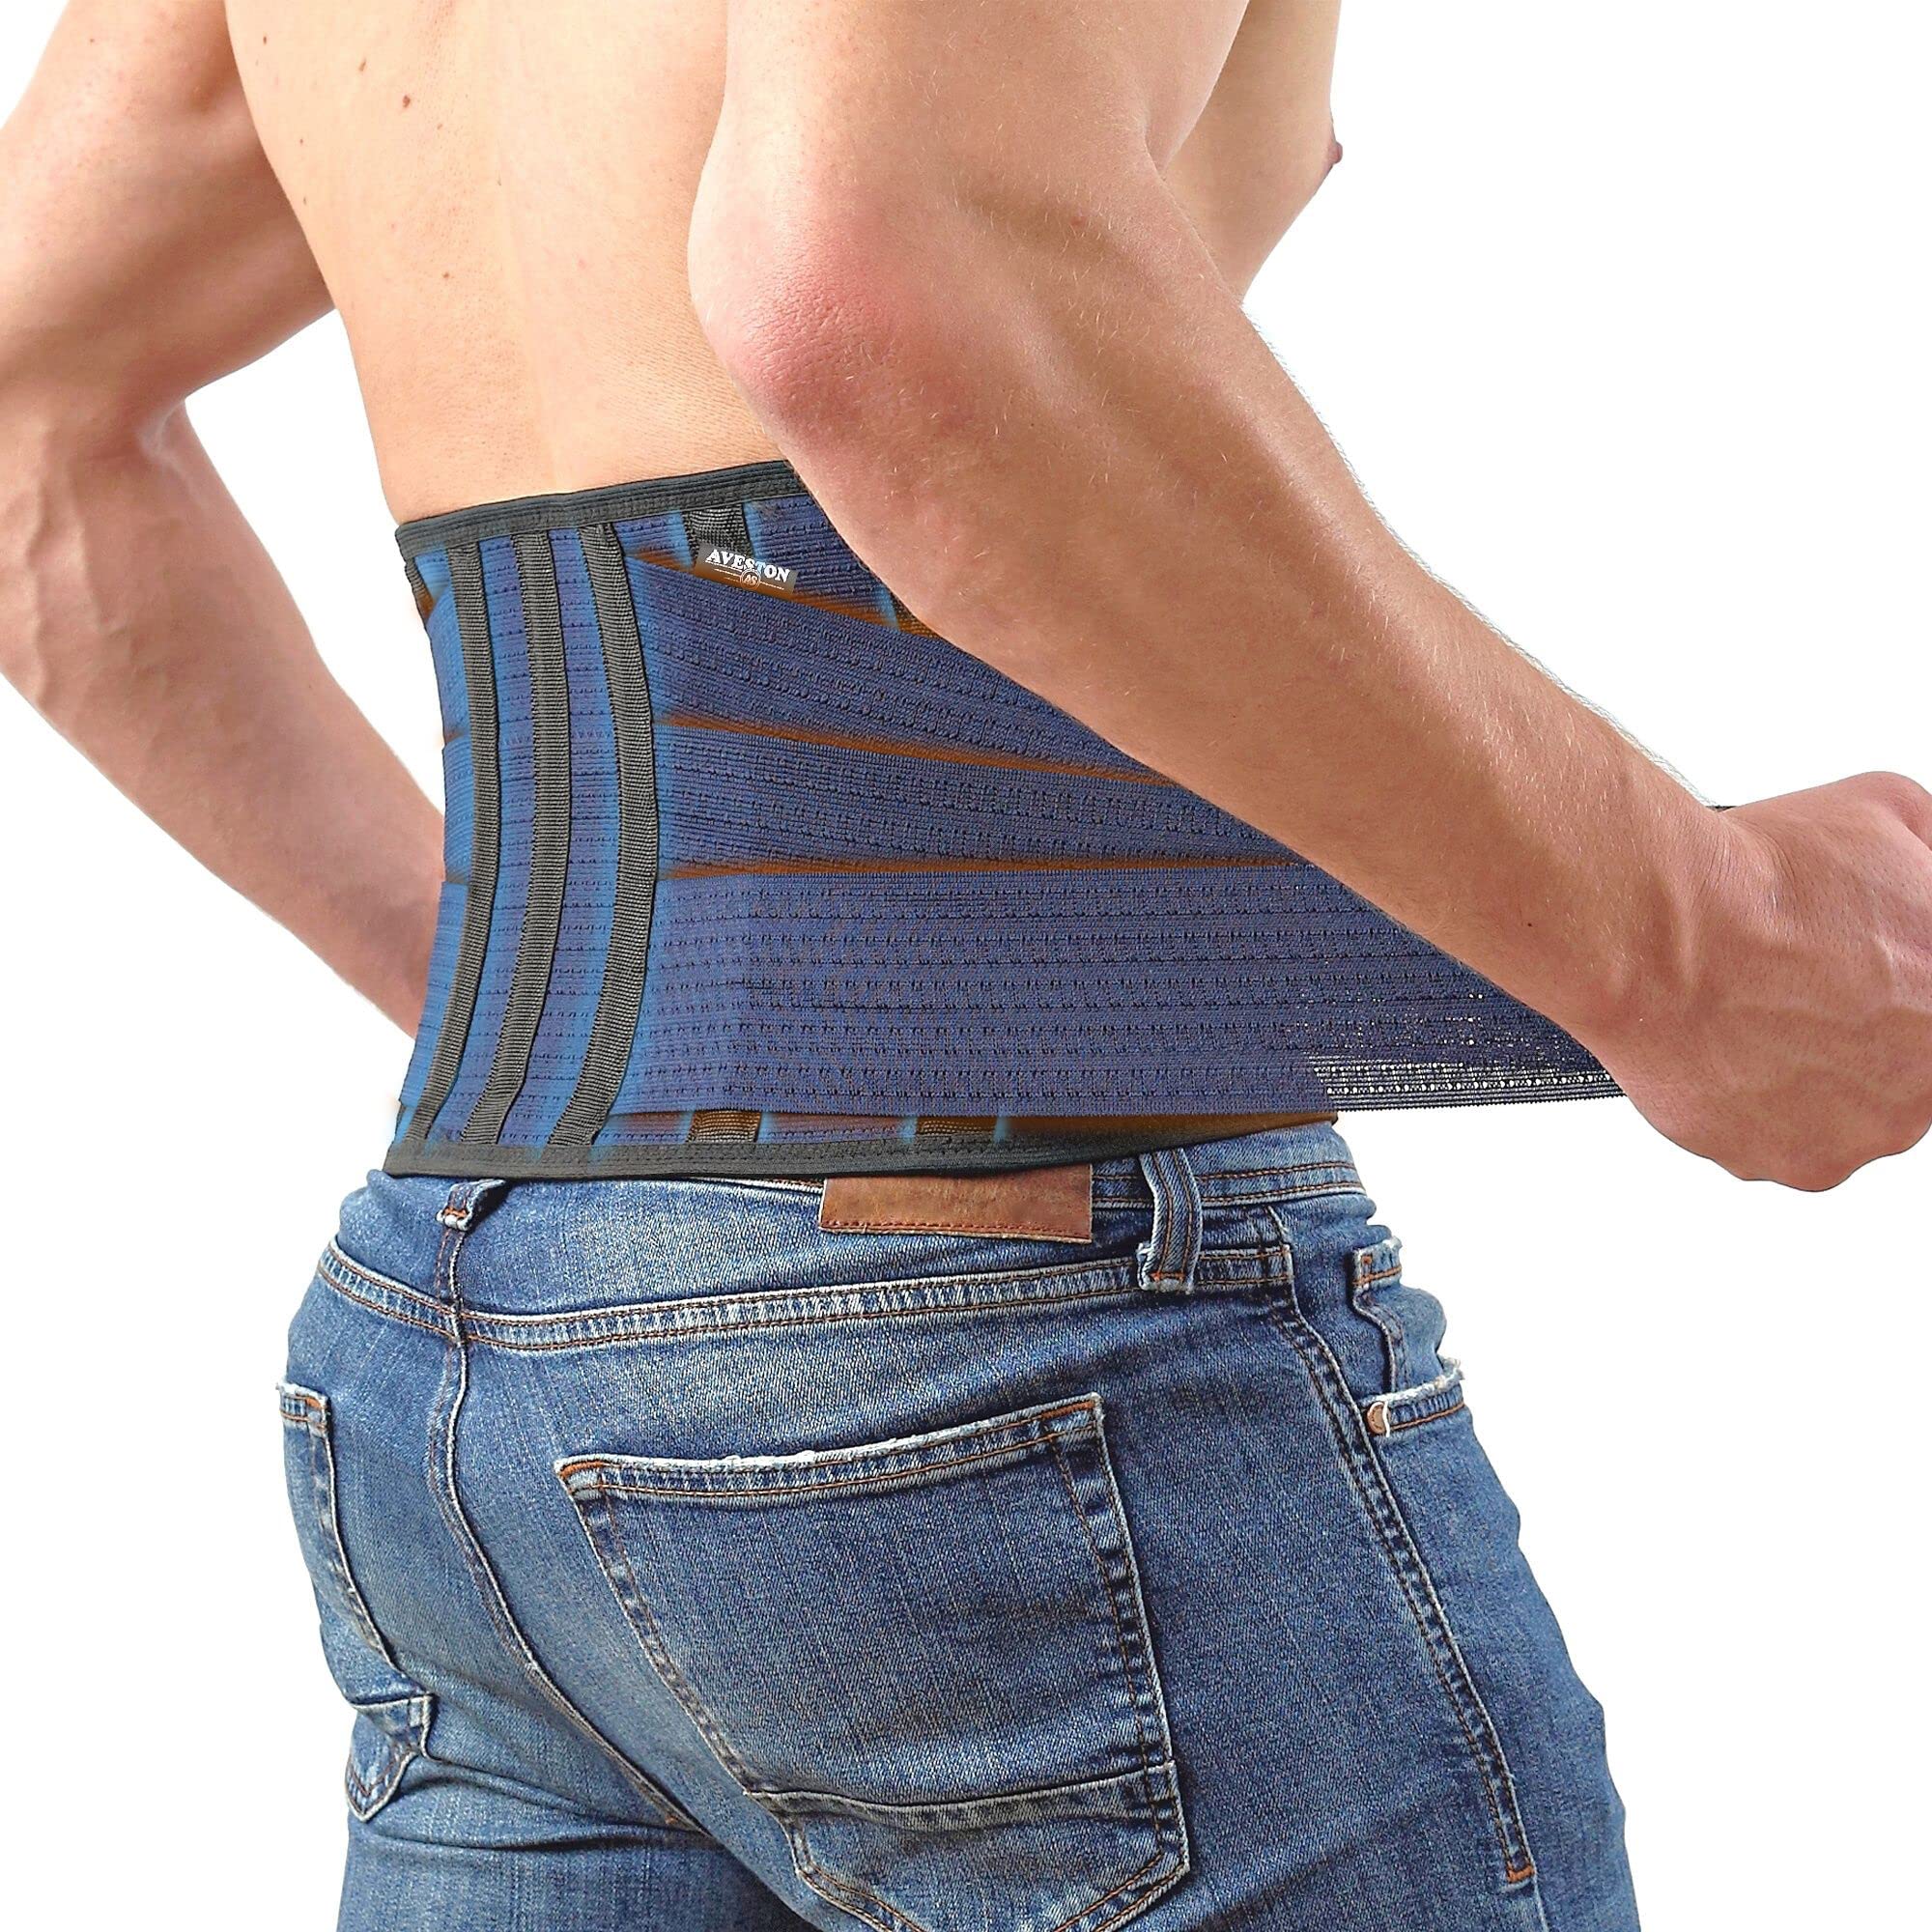 Abdominal Belt Waist Support Compression Lumbar Brace for Men